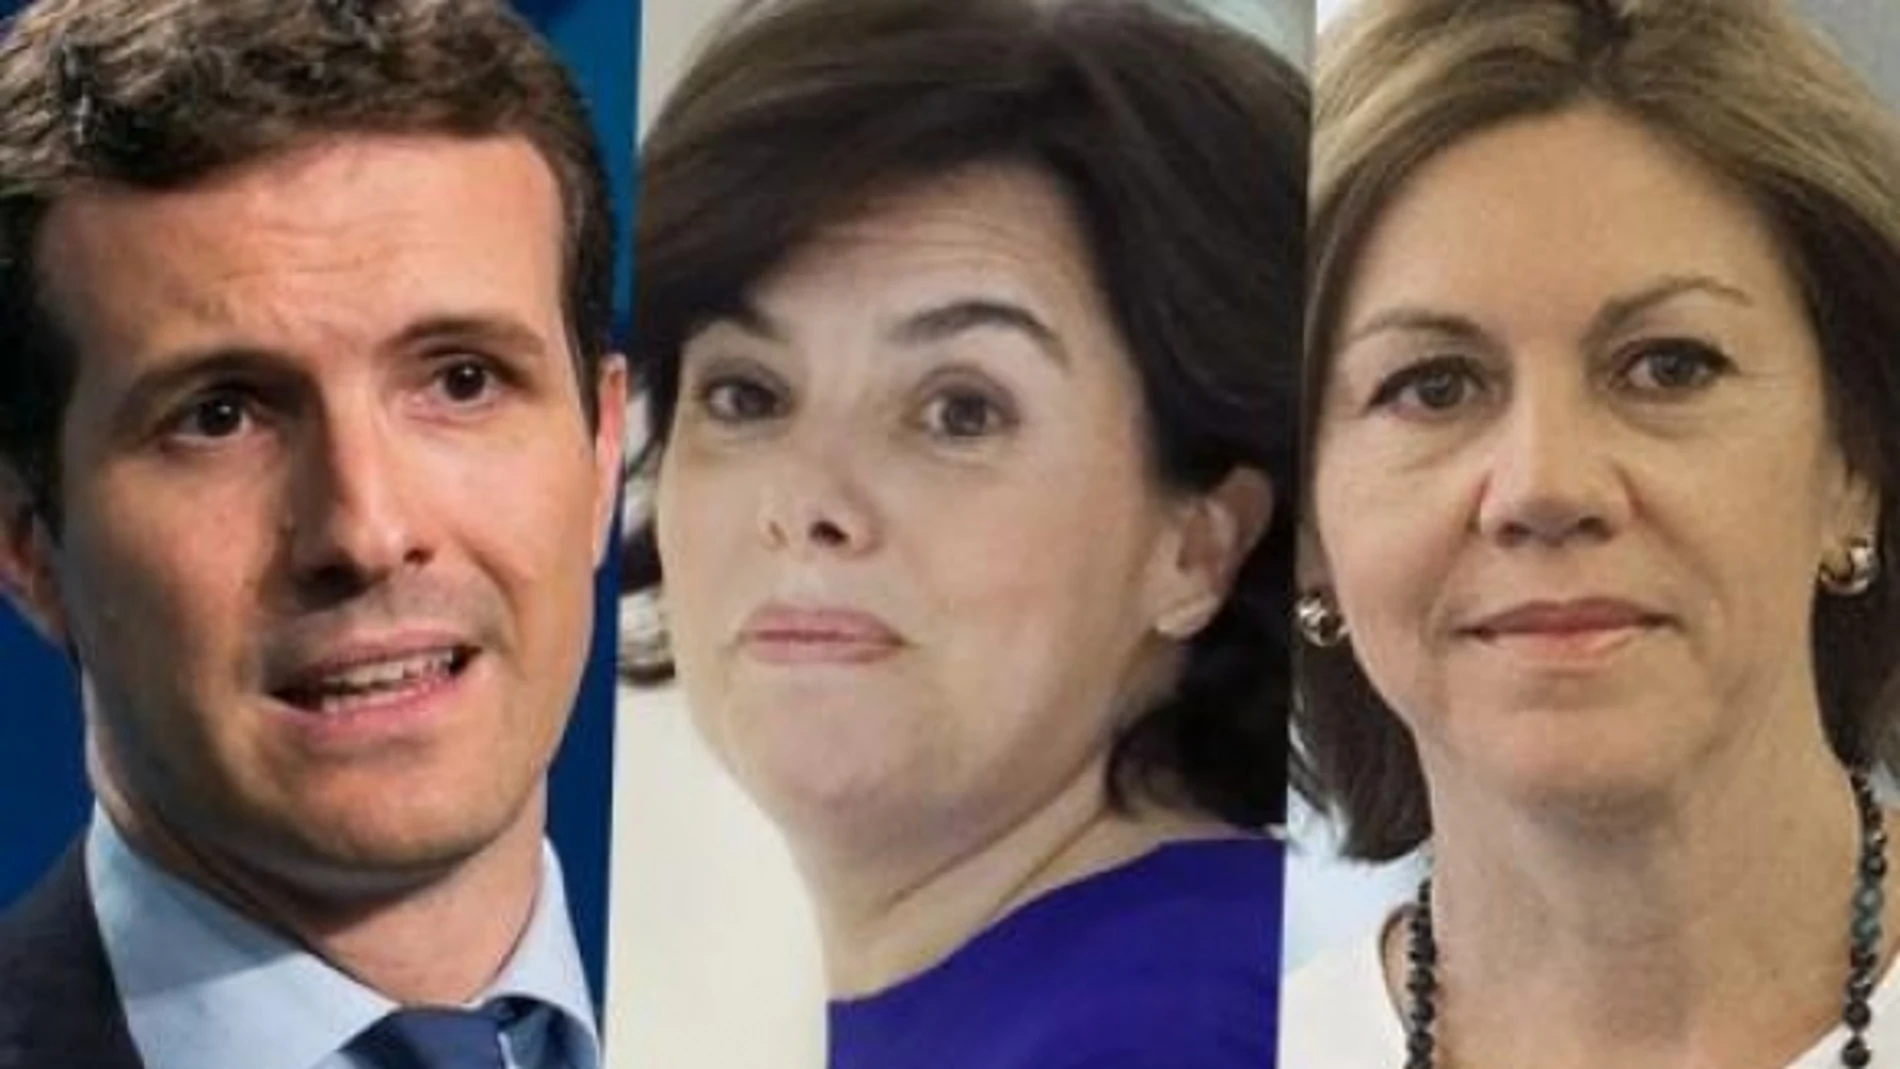 Los candidatos a presidir el PP: Pablo Casado, Soraya Sáenz de Santamaría y María Dolores de Cospedal / Efe